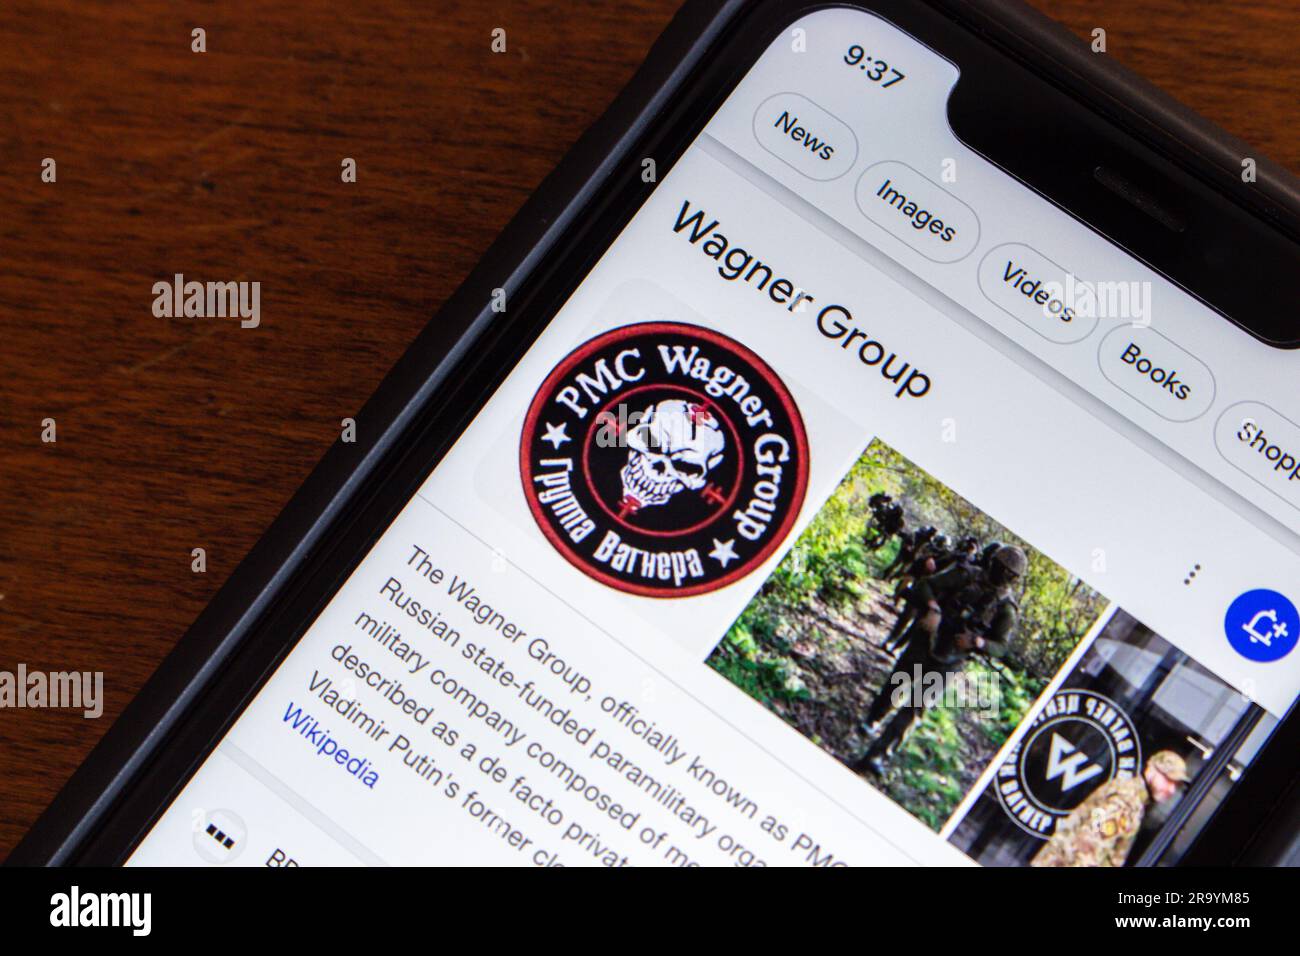 Résultat de recherche Google de Wagner Group vu dans un iPhone. Le groupe Wagner est une organisation paramilitaire financée par l'État russe (PMC Wagner) Banque D'Images